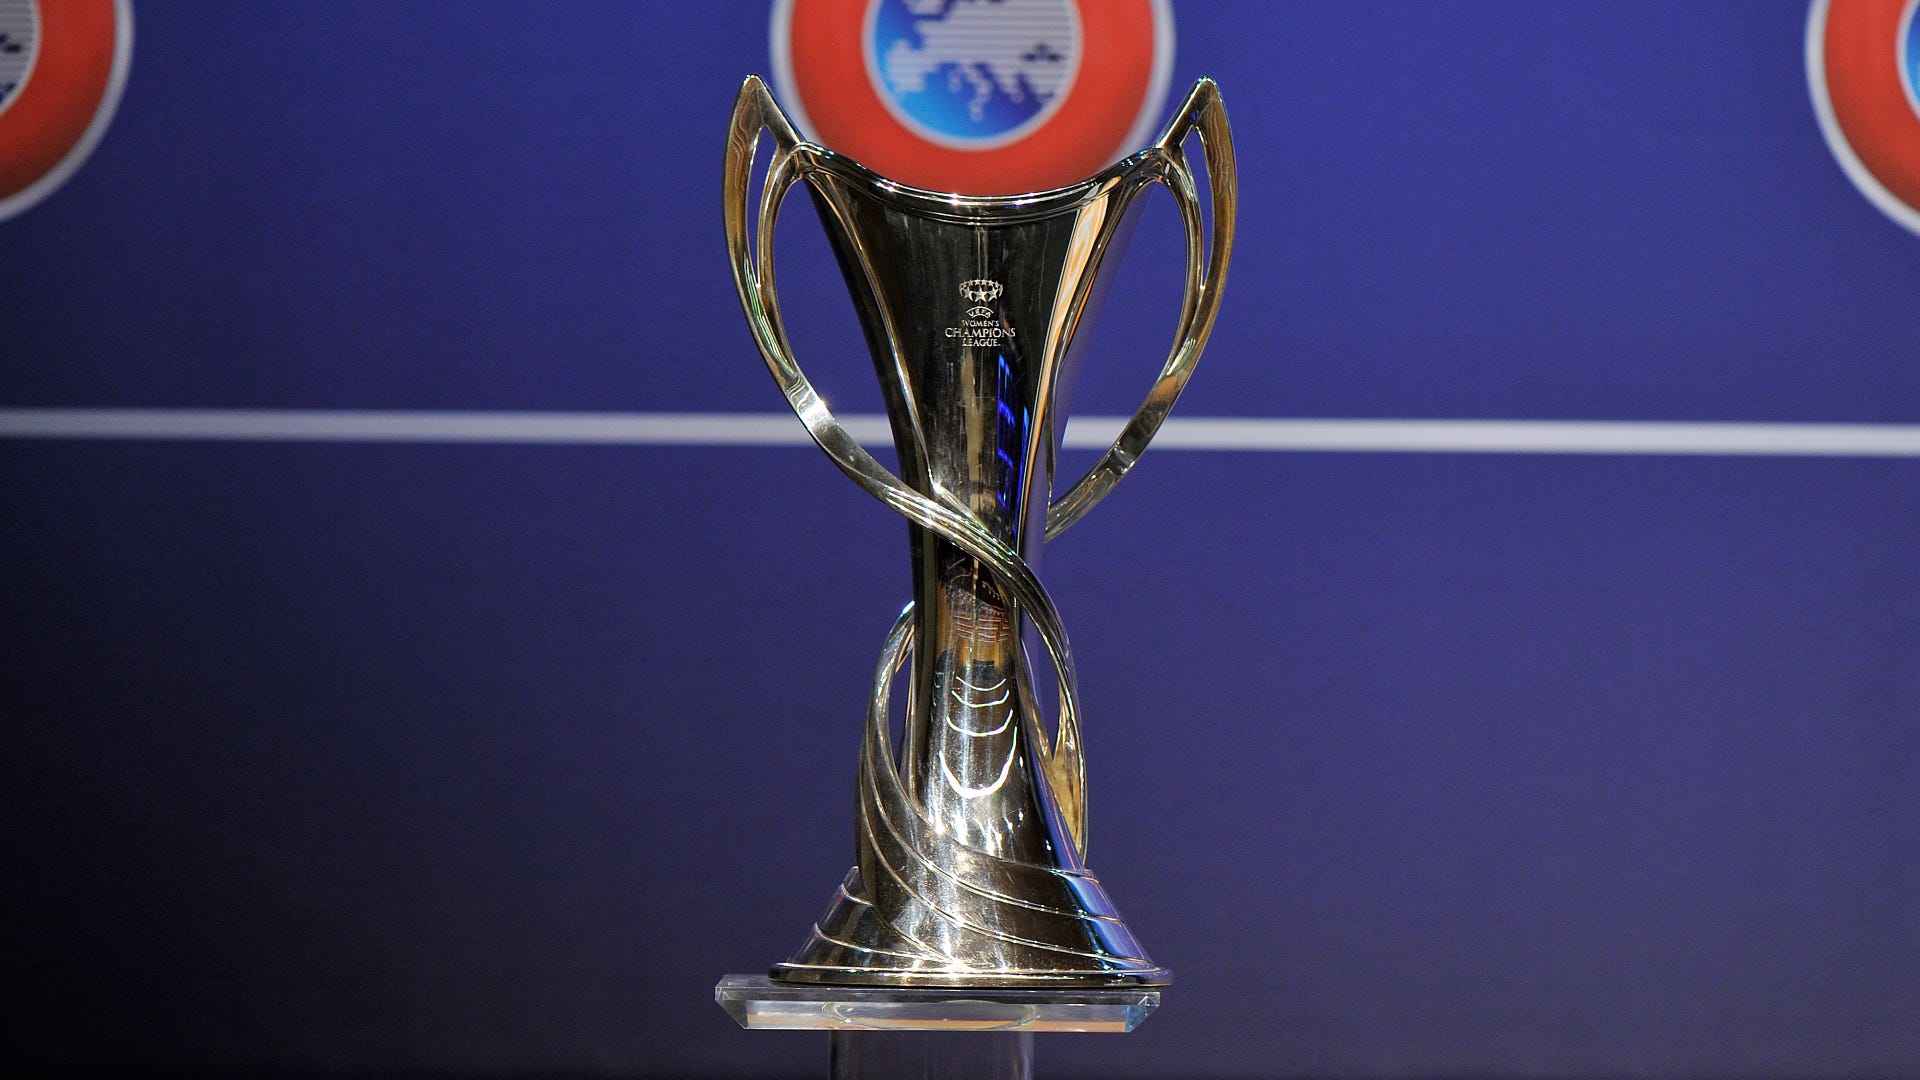 Champions League 2022/23: Os times classificados às quartas de final - Champions  League - Br - Futboo.com